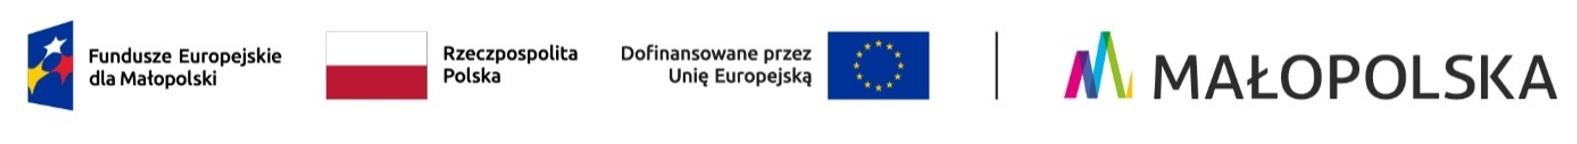 logo Fundusze Europejskie dla Małopolski 2021-2027, flaga Rzeczpospolita Polska, flaga Unii Europejskiej wraz z informacją dofinansowane przez Unie Europejską, logo Małopolski